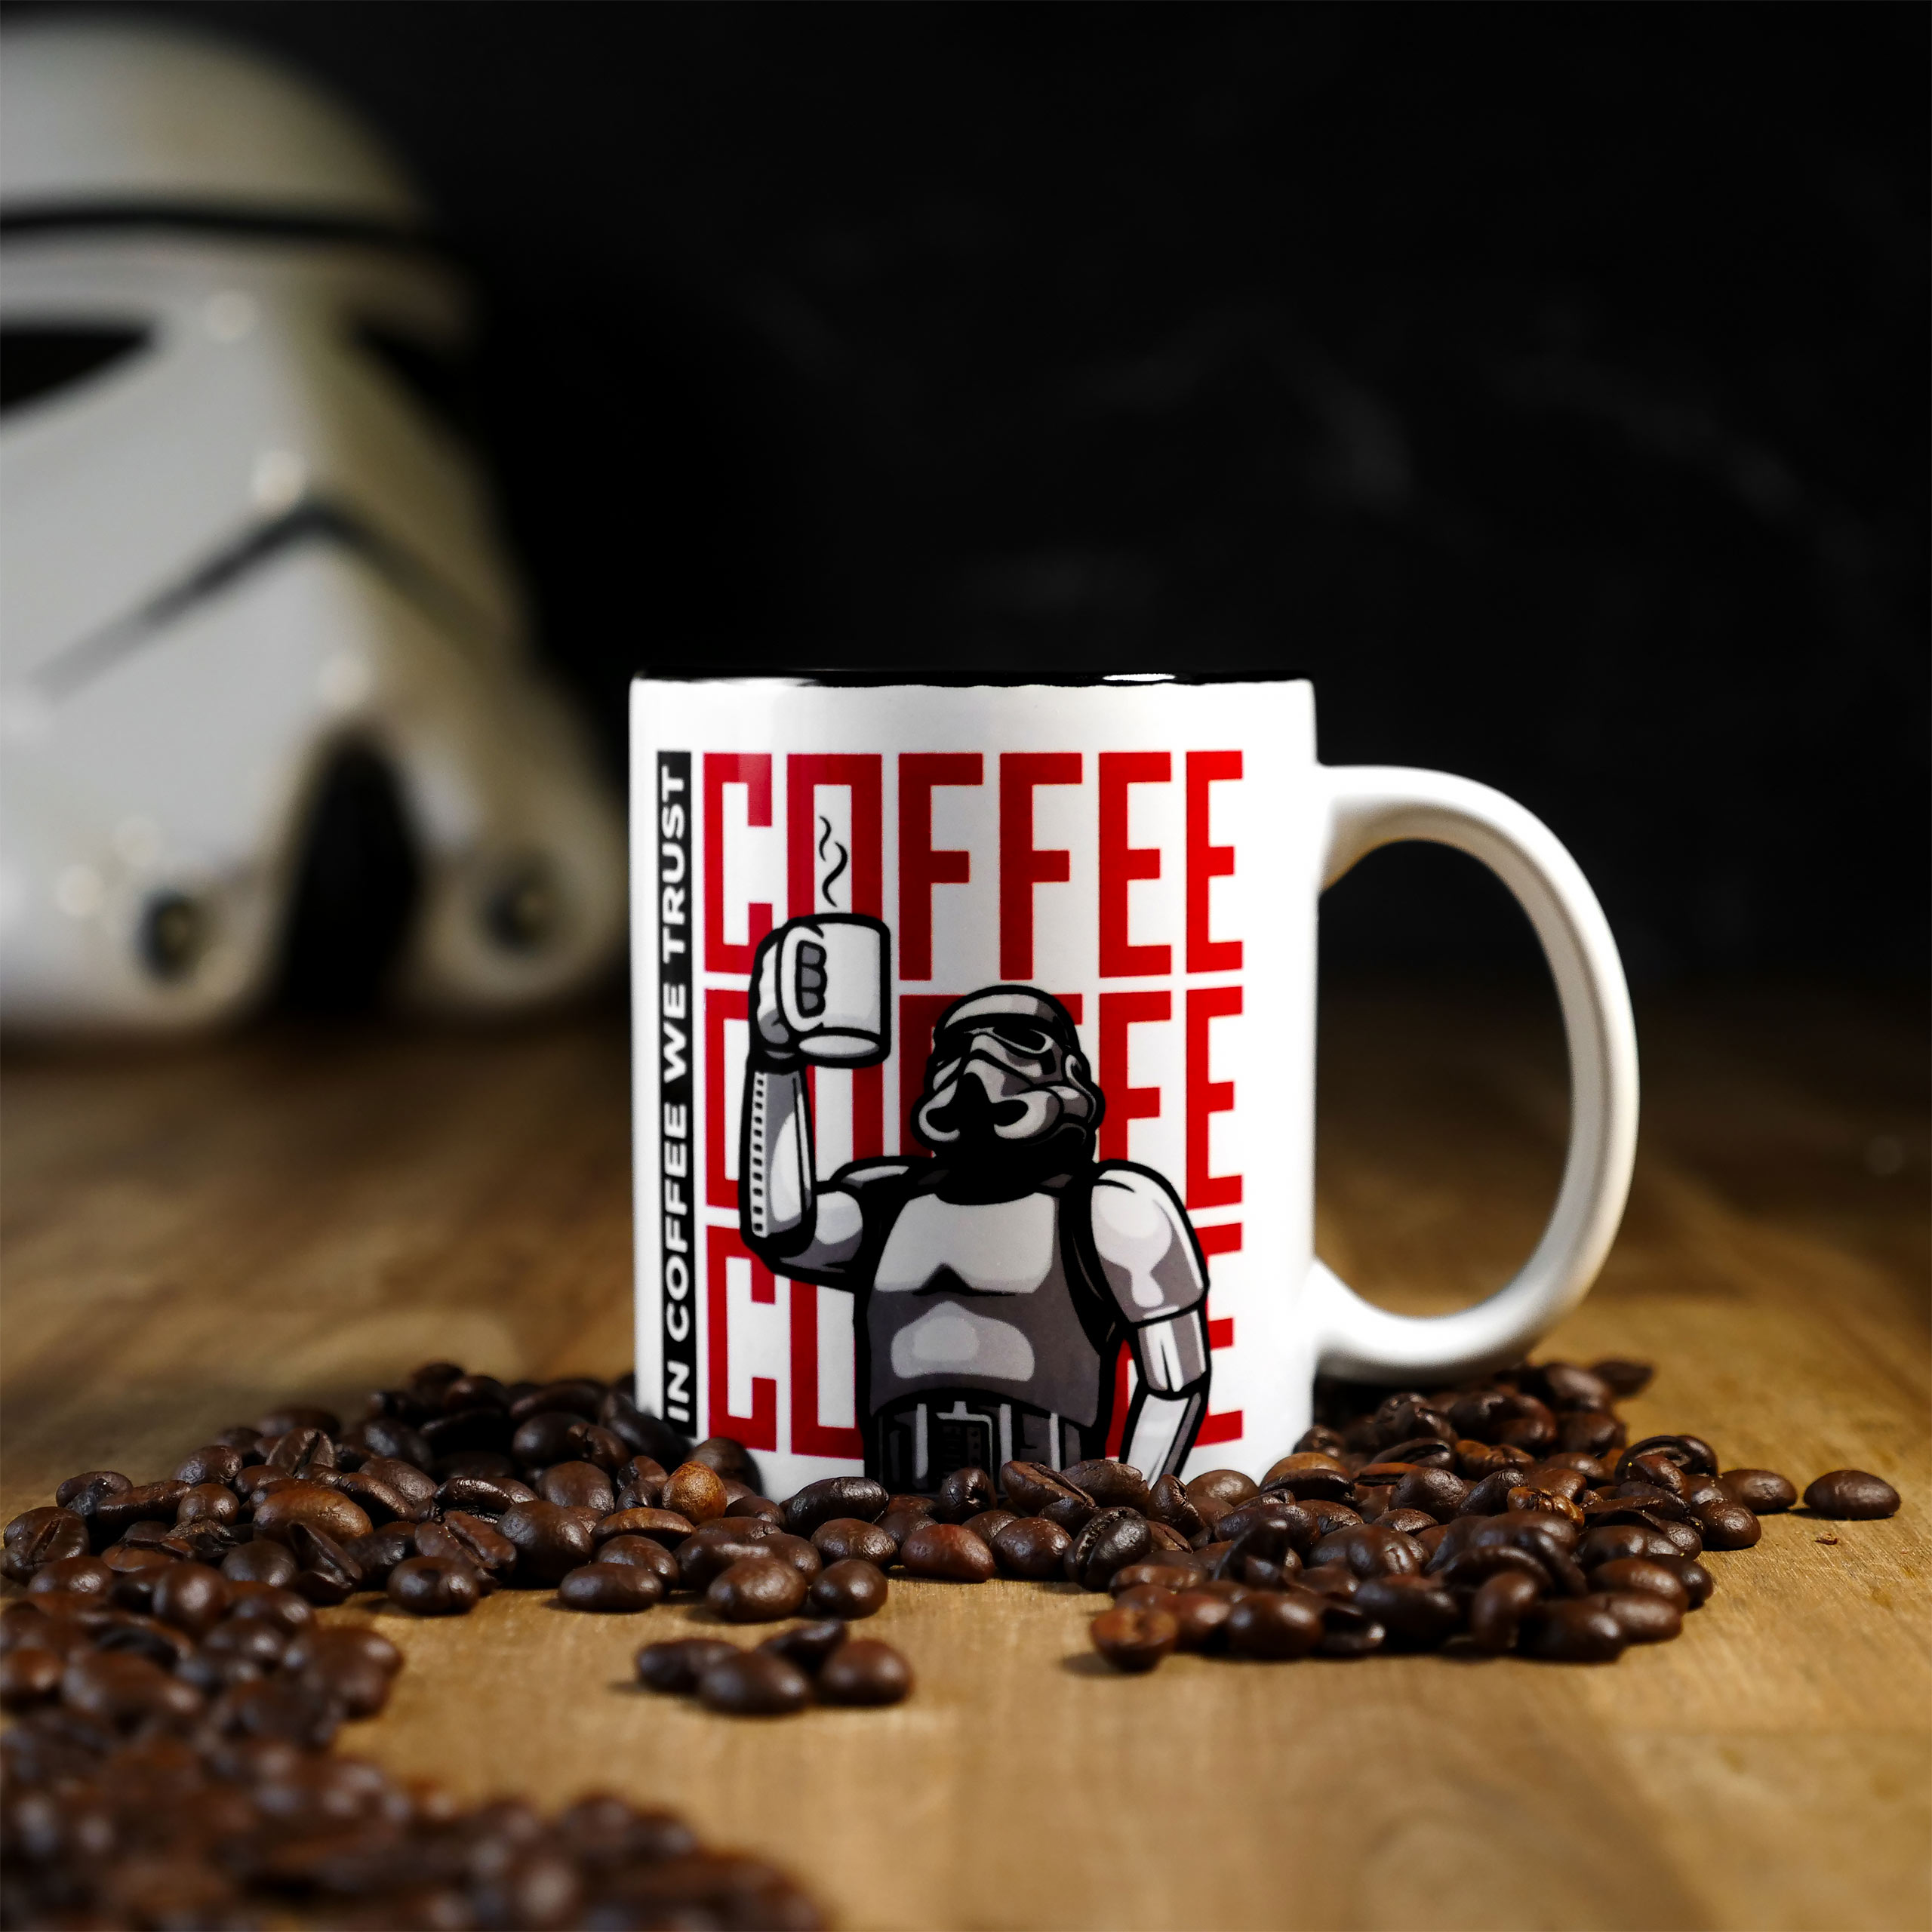 Original Stormtrooper - In Coffee We Trust Tasse